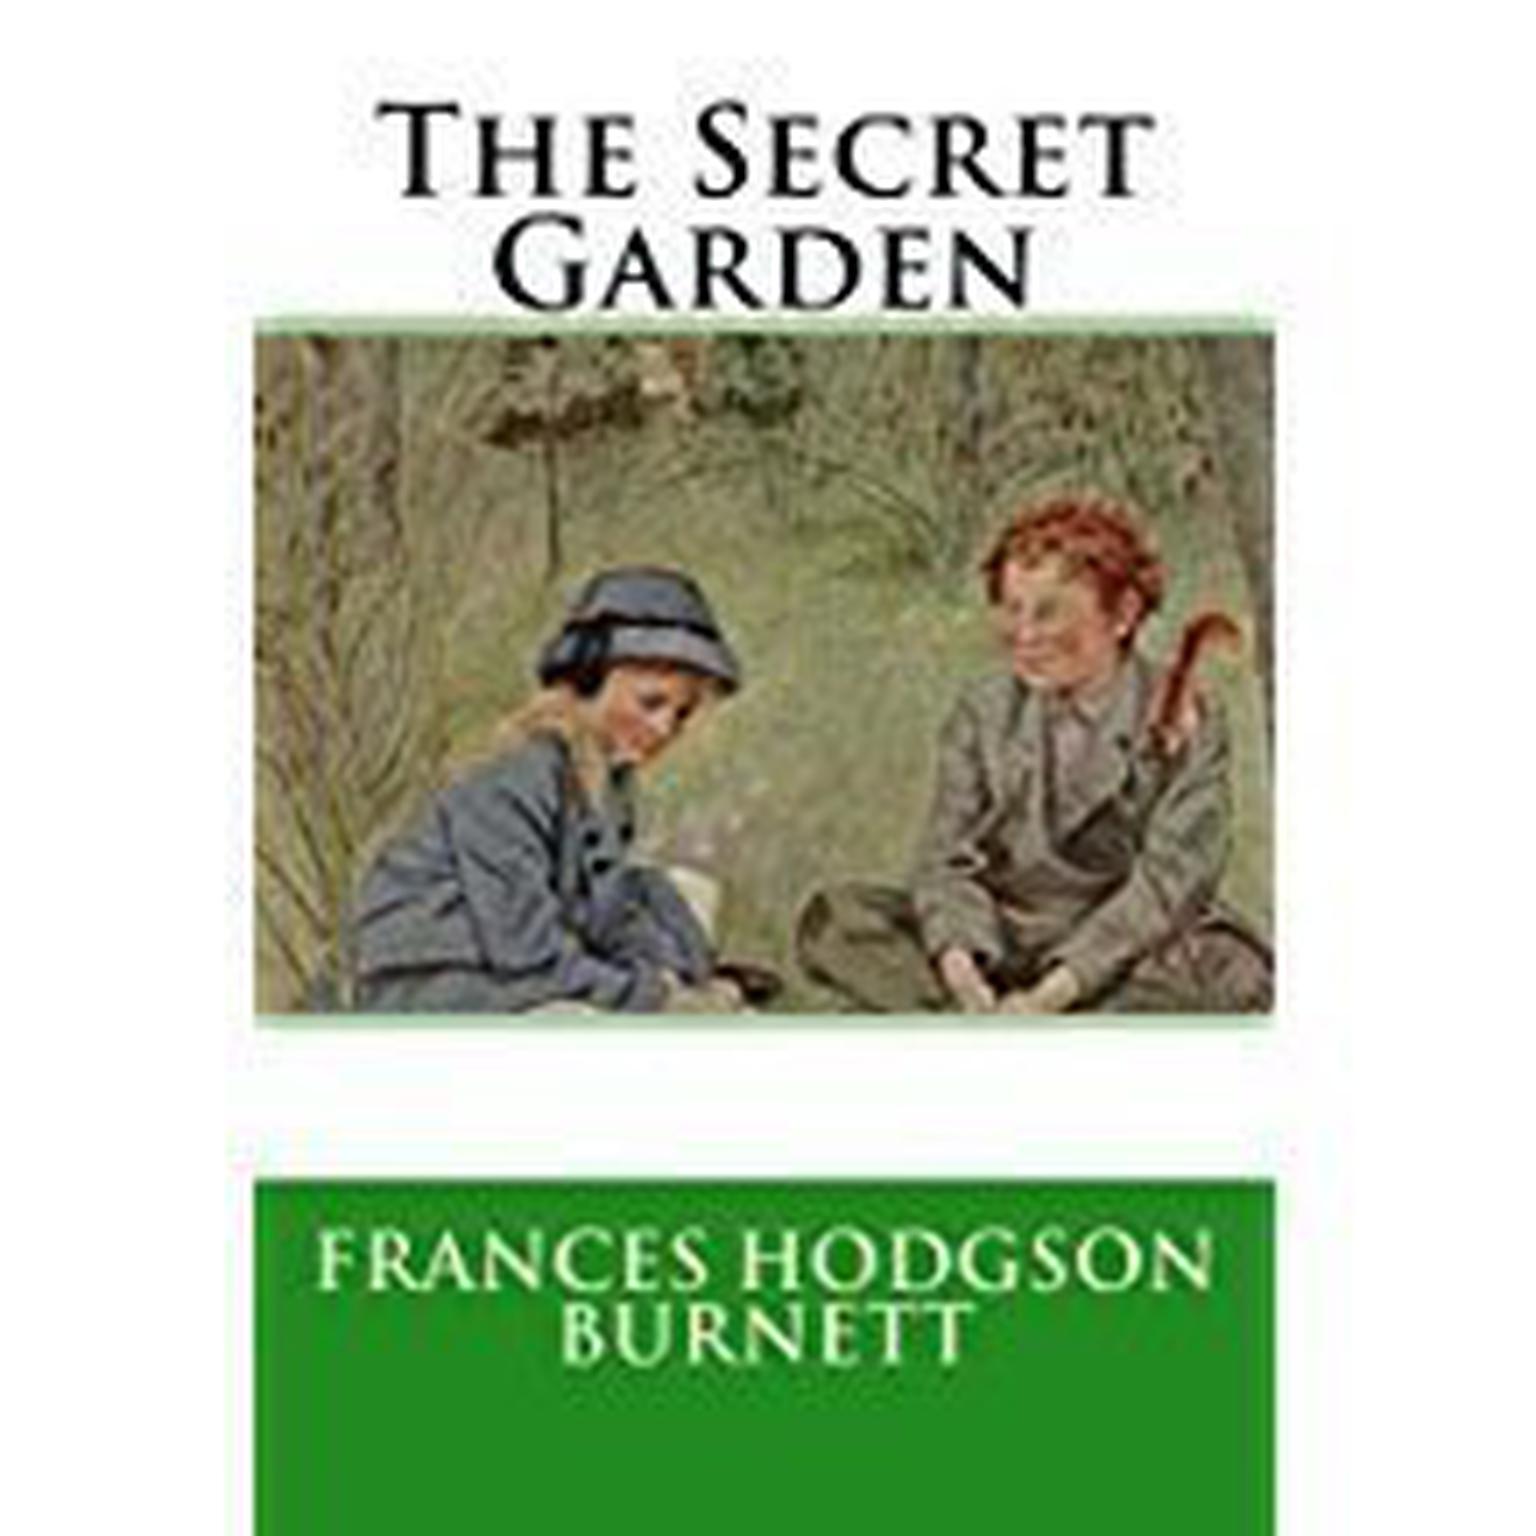 The Secret Garden Audiobook, by Frances Hodgson Burnett